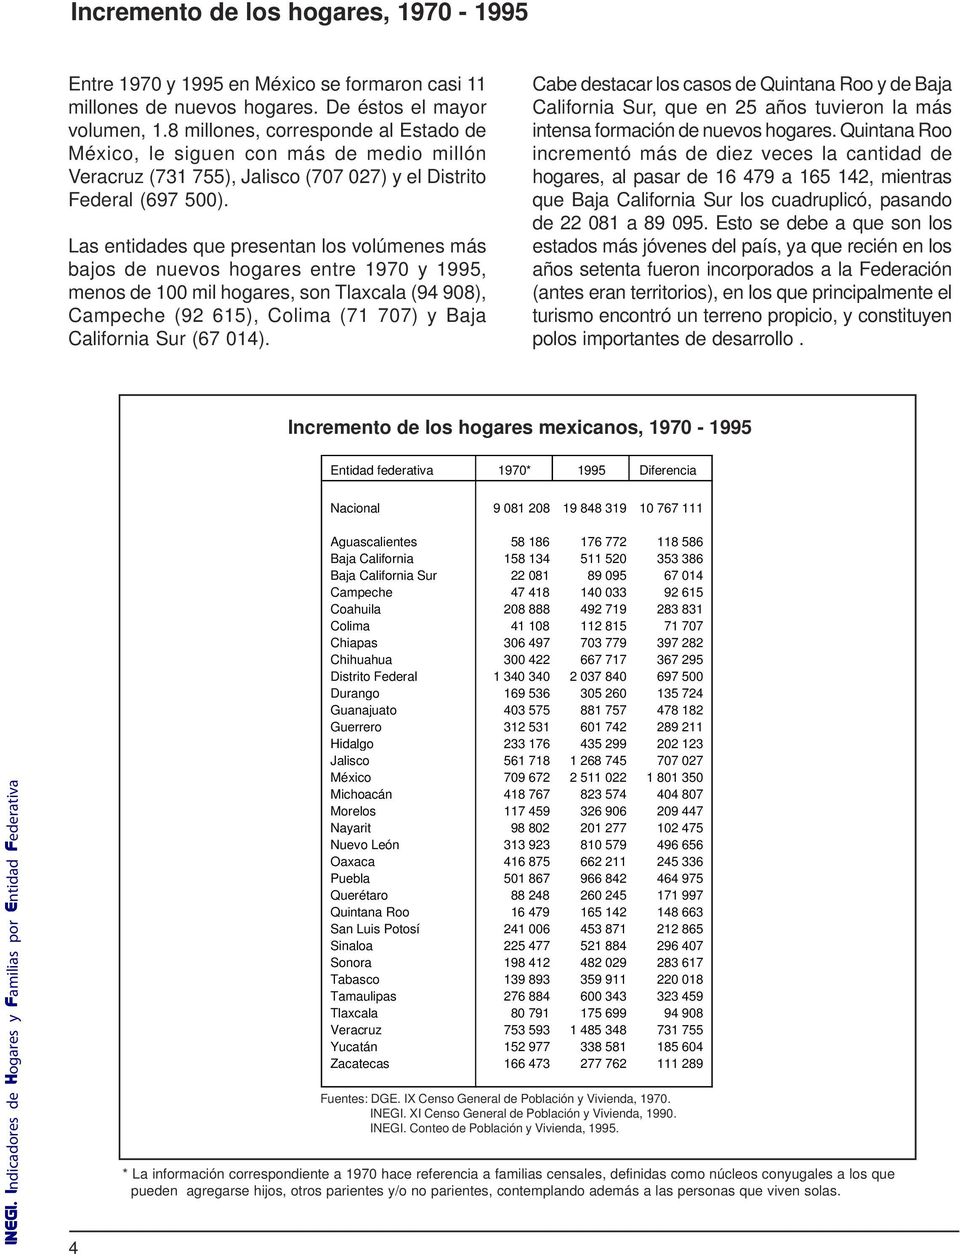 Las entidades que presentan los volúmenes más bajos de nuevos hogares entre 1970 y 1995, menos de 100 mil hogares, son Tlaxcala (94 908), Campeche (92 615), Colima (71 707) y Baja California Sur (67